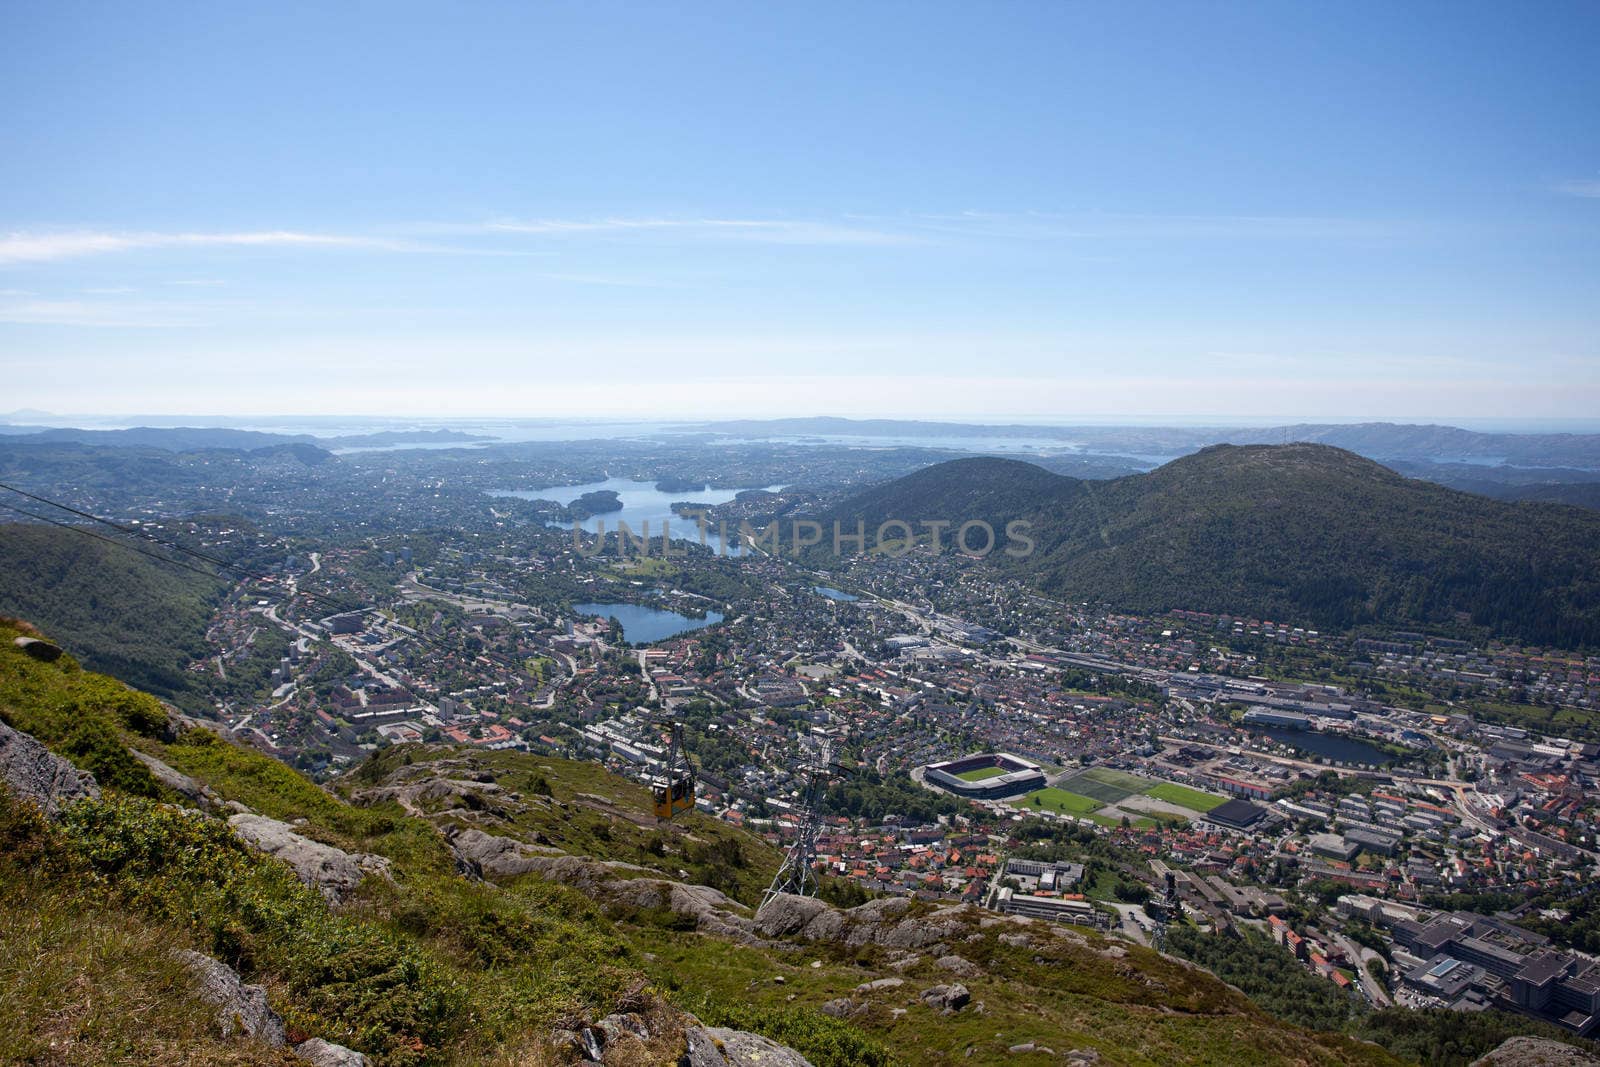 Taken from Ulriken in the city of Bergen, Norway